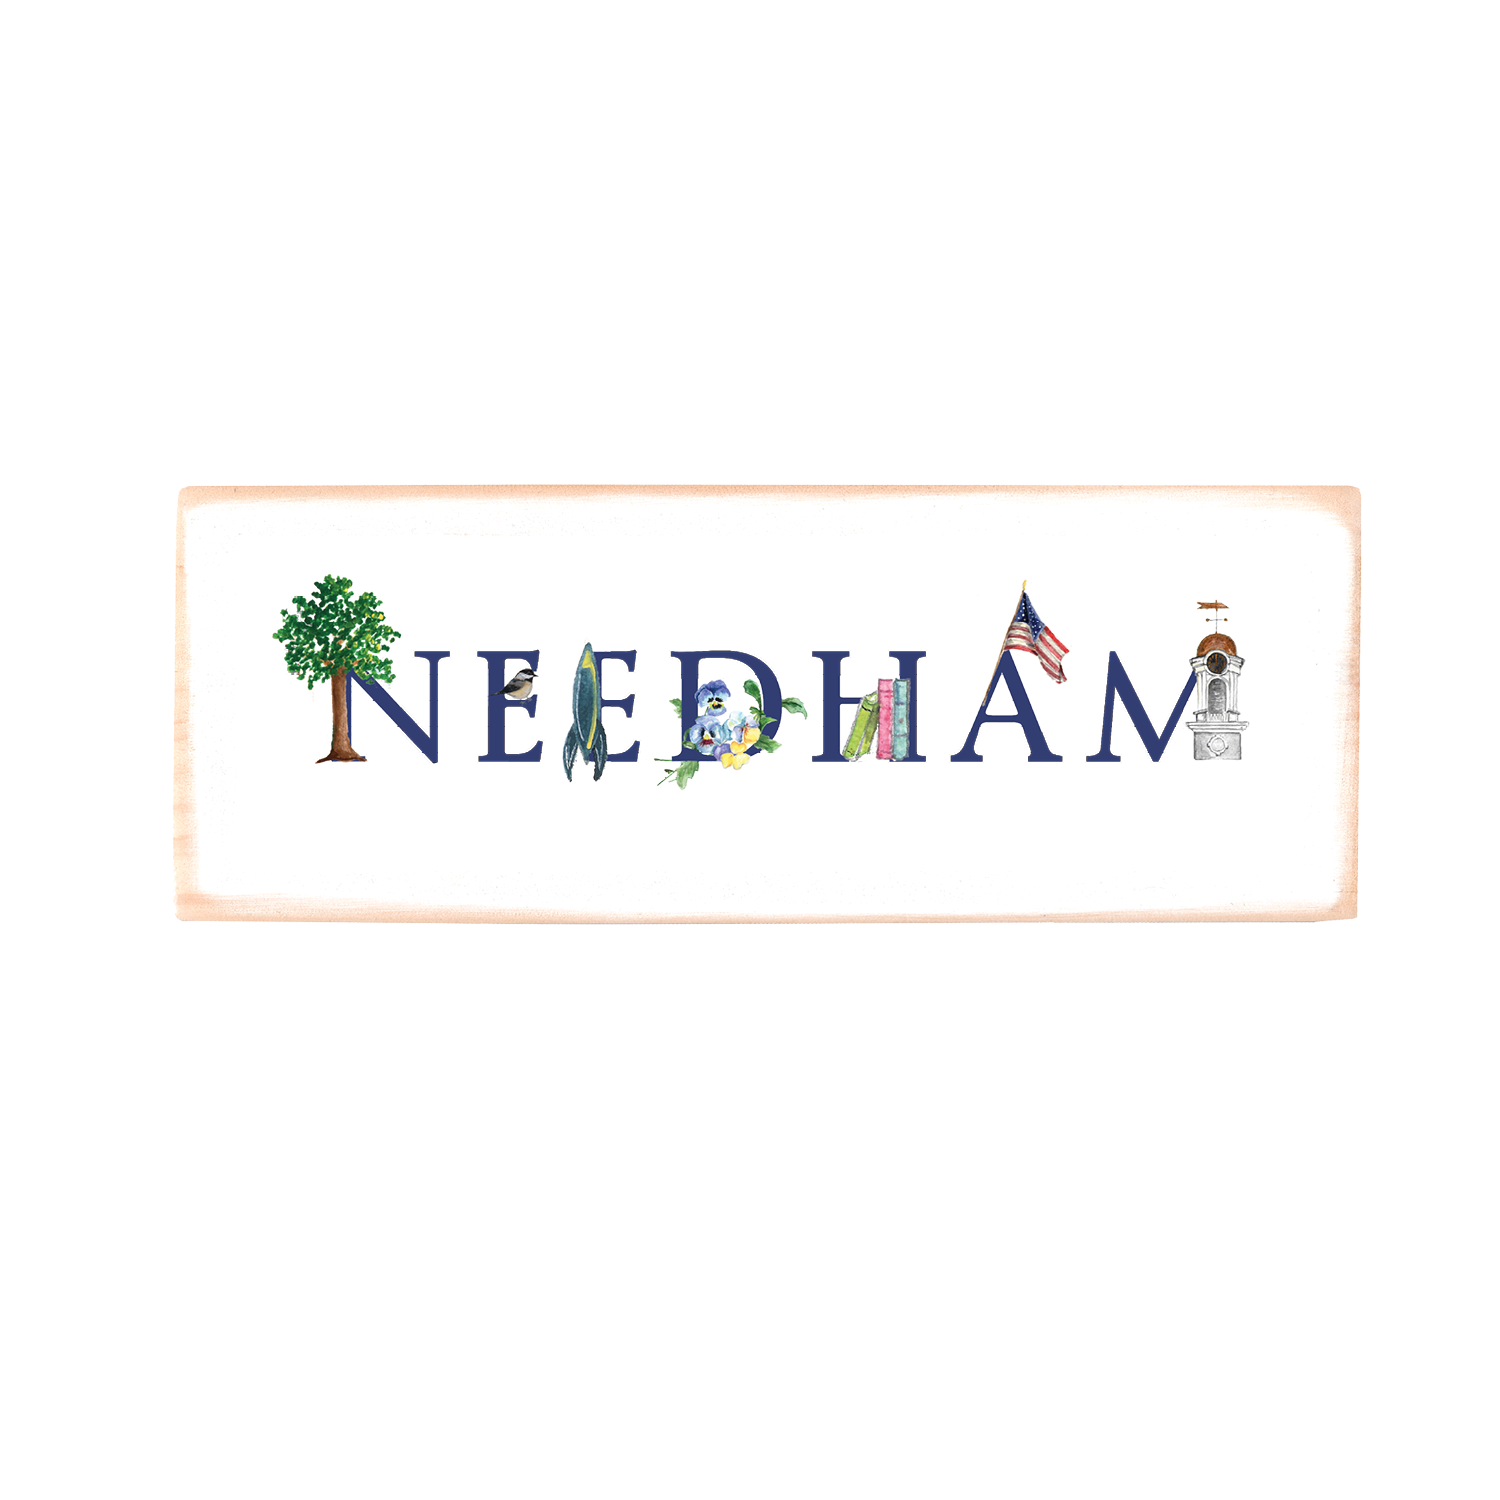 needham rectangle wood block